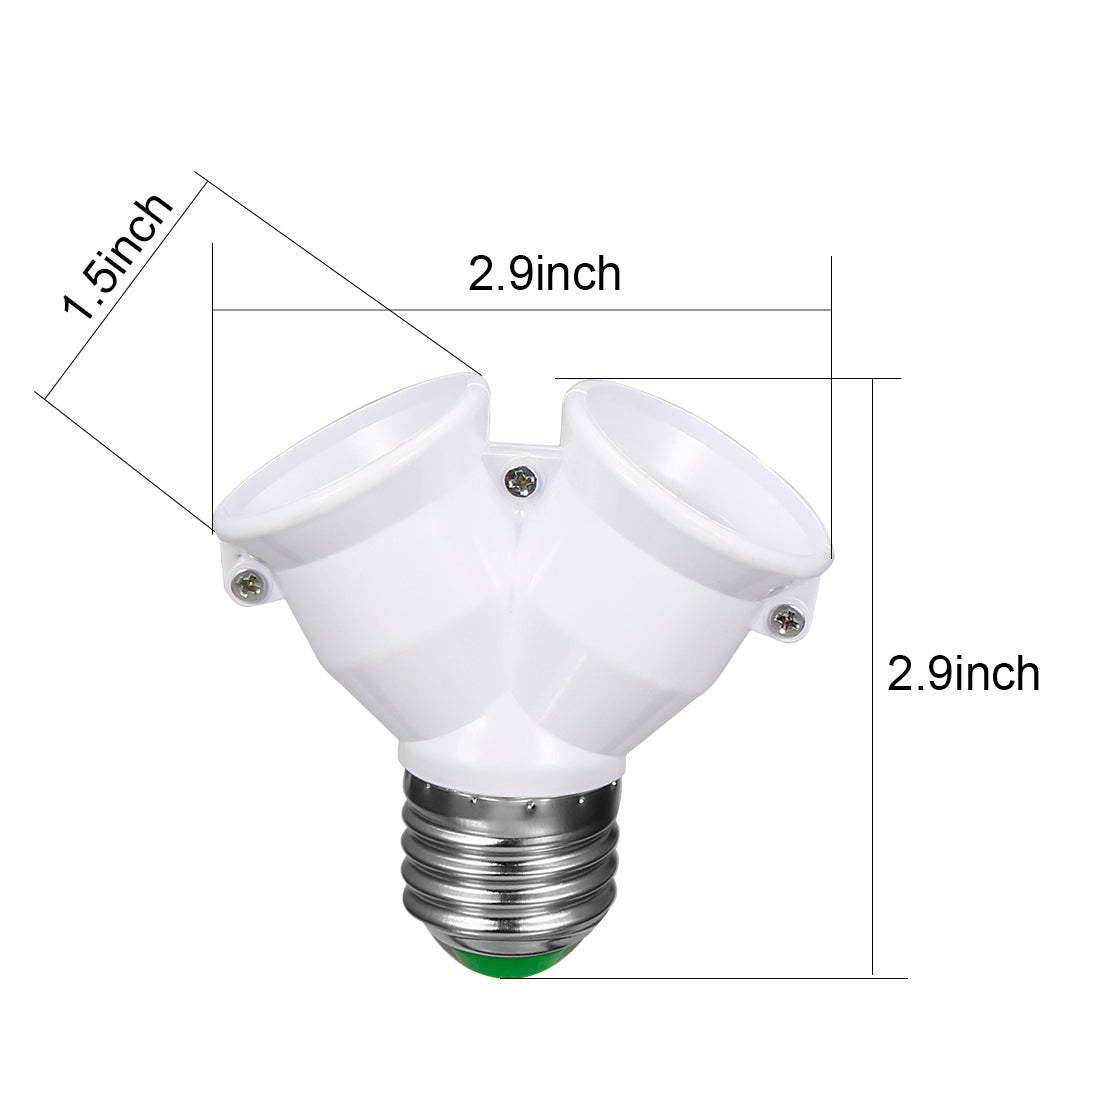 uxcell Uxcell E27 to Dual E27 Adapter LED Light Socket E27 to 2 E27 Converter Bulb Base Splitter Lamp Holder